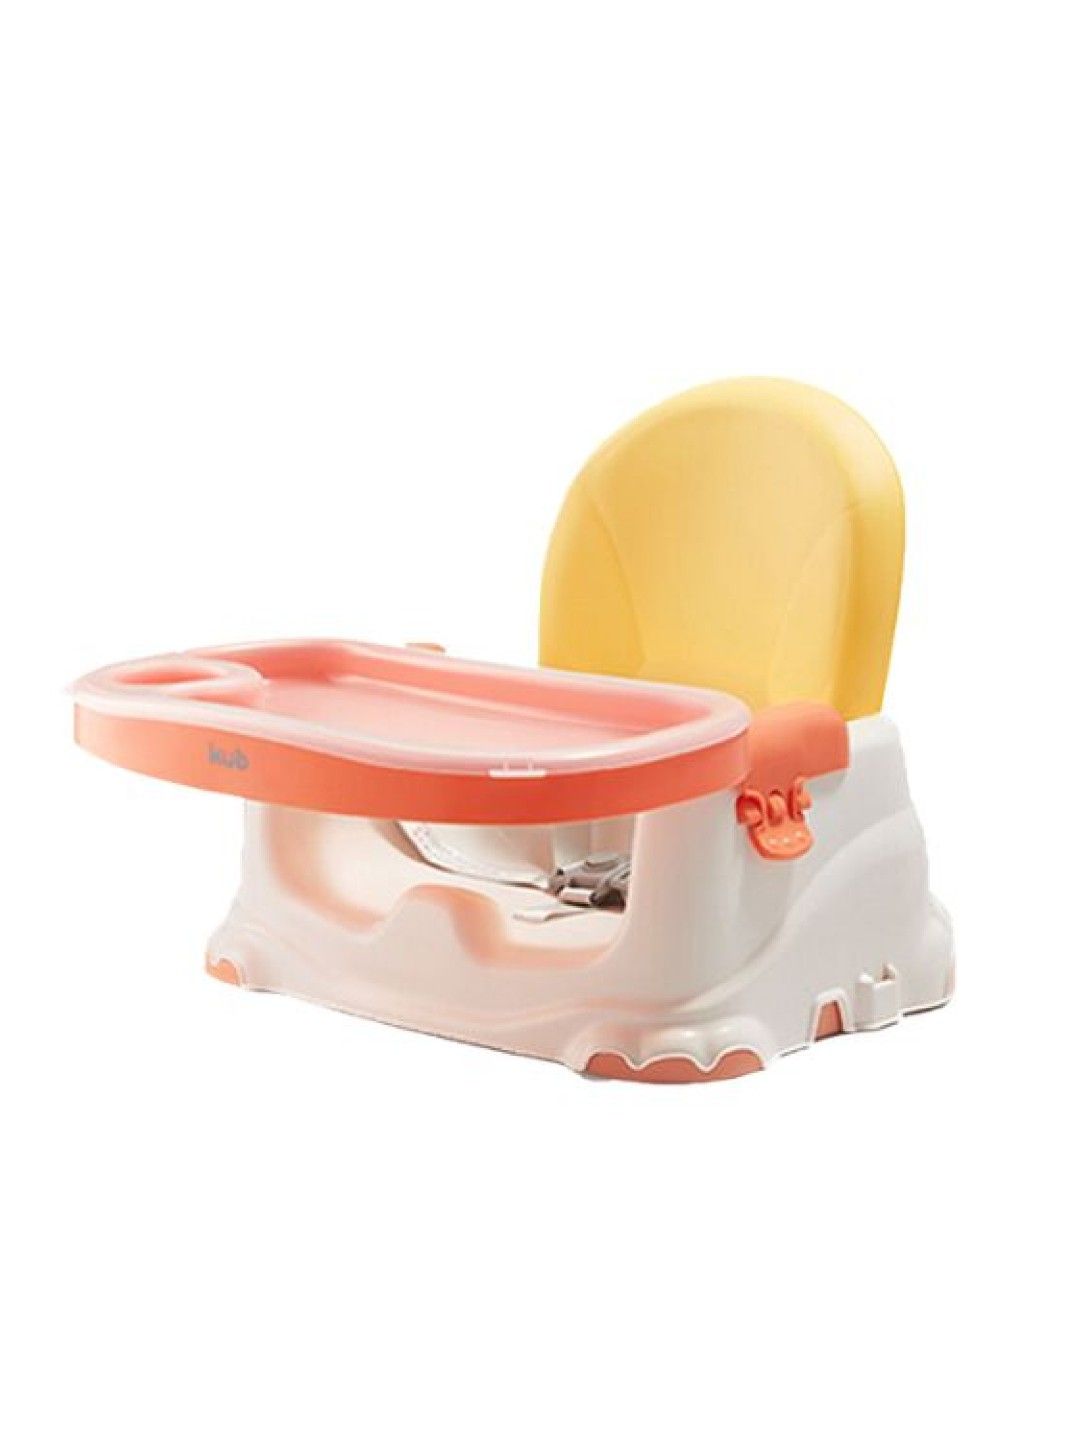 KUB Booster seat (Pink- Image 1)